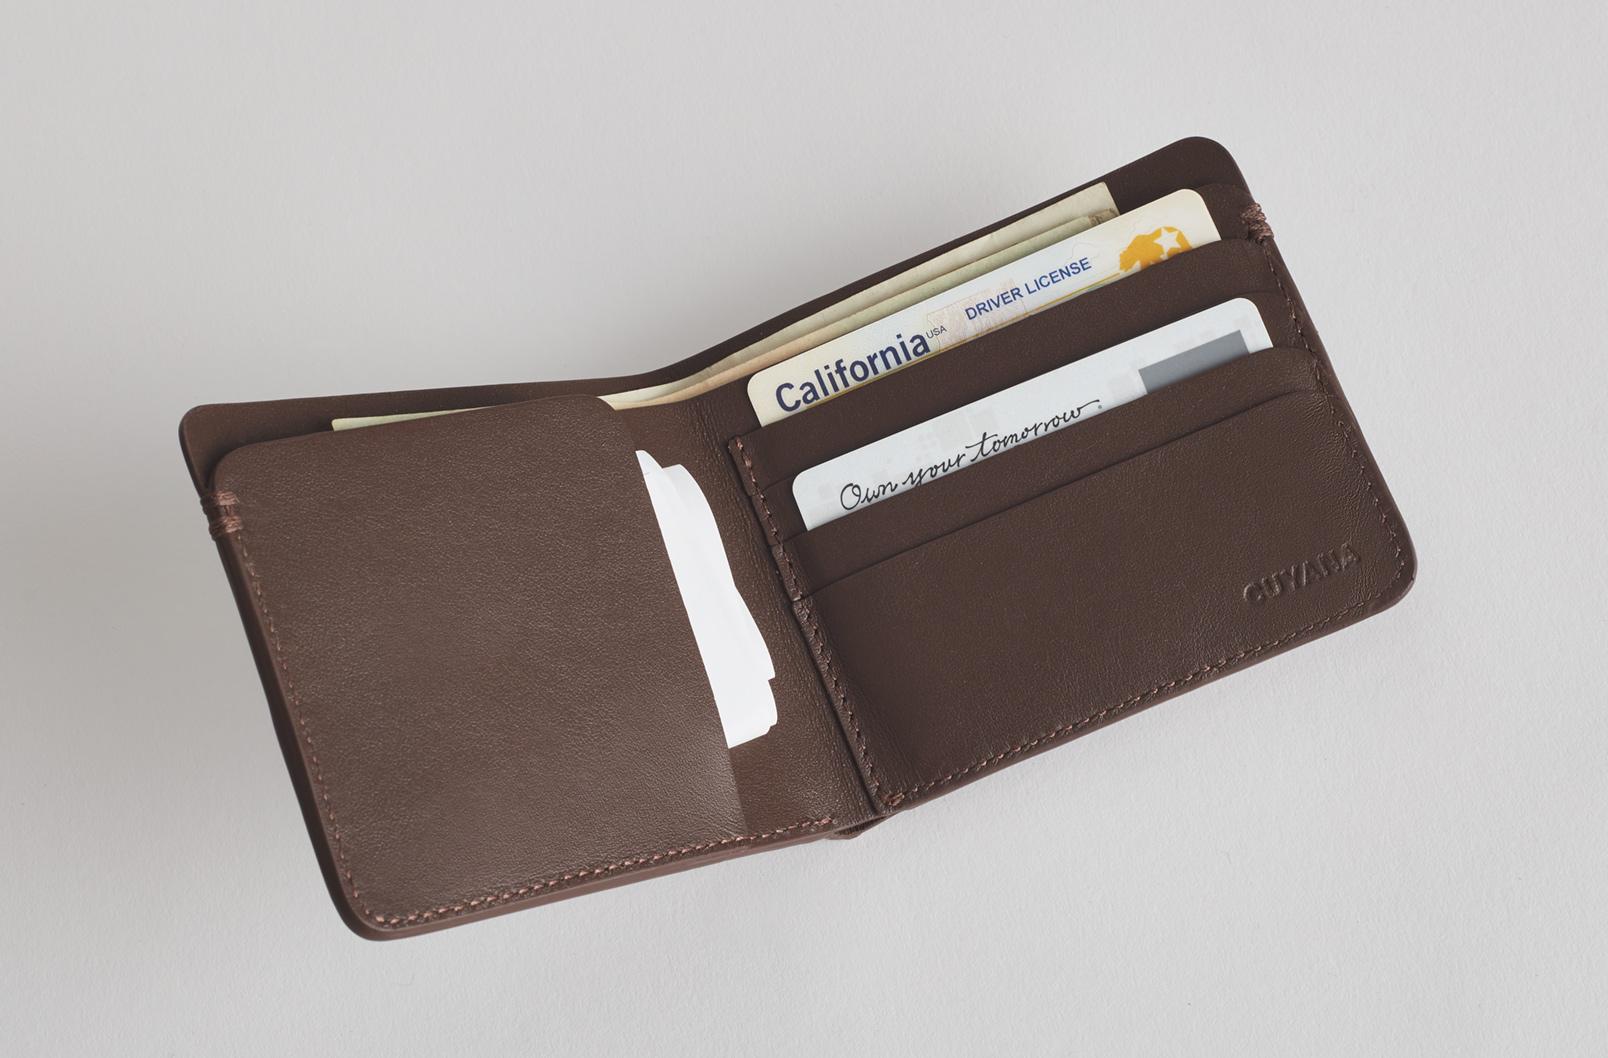 An open leather folding wallet.